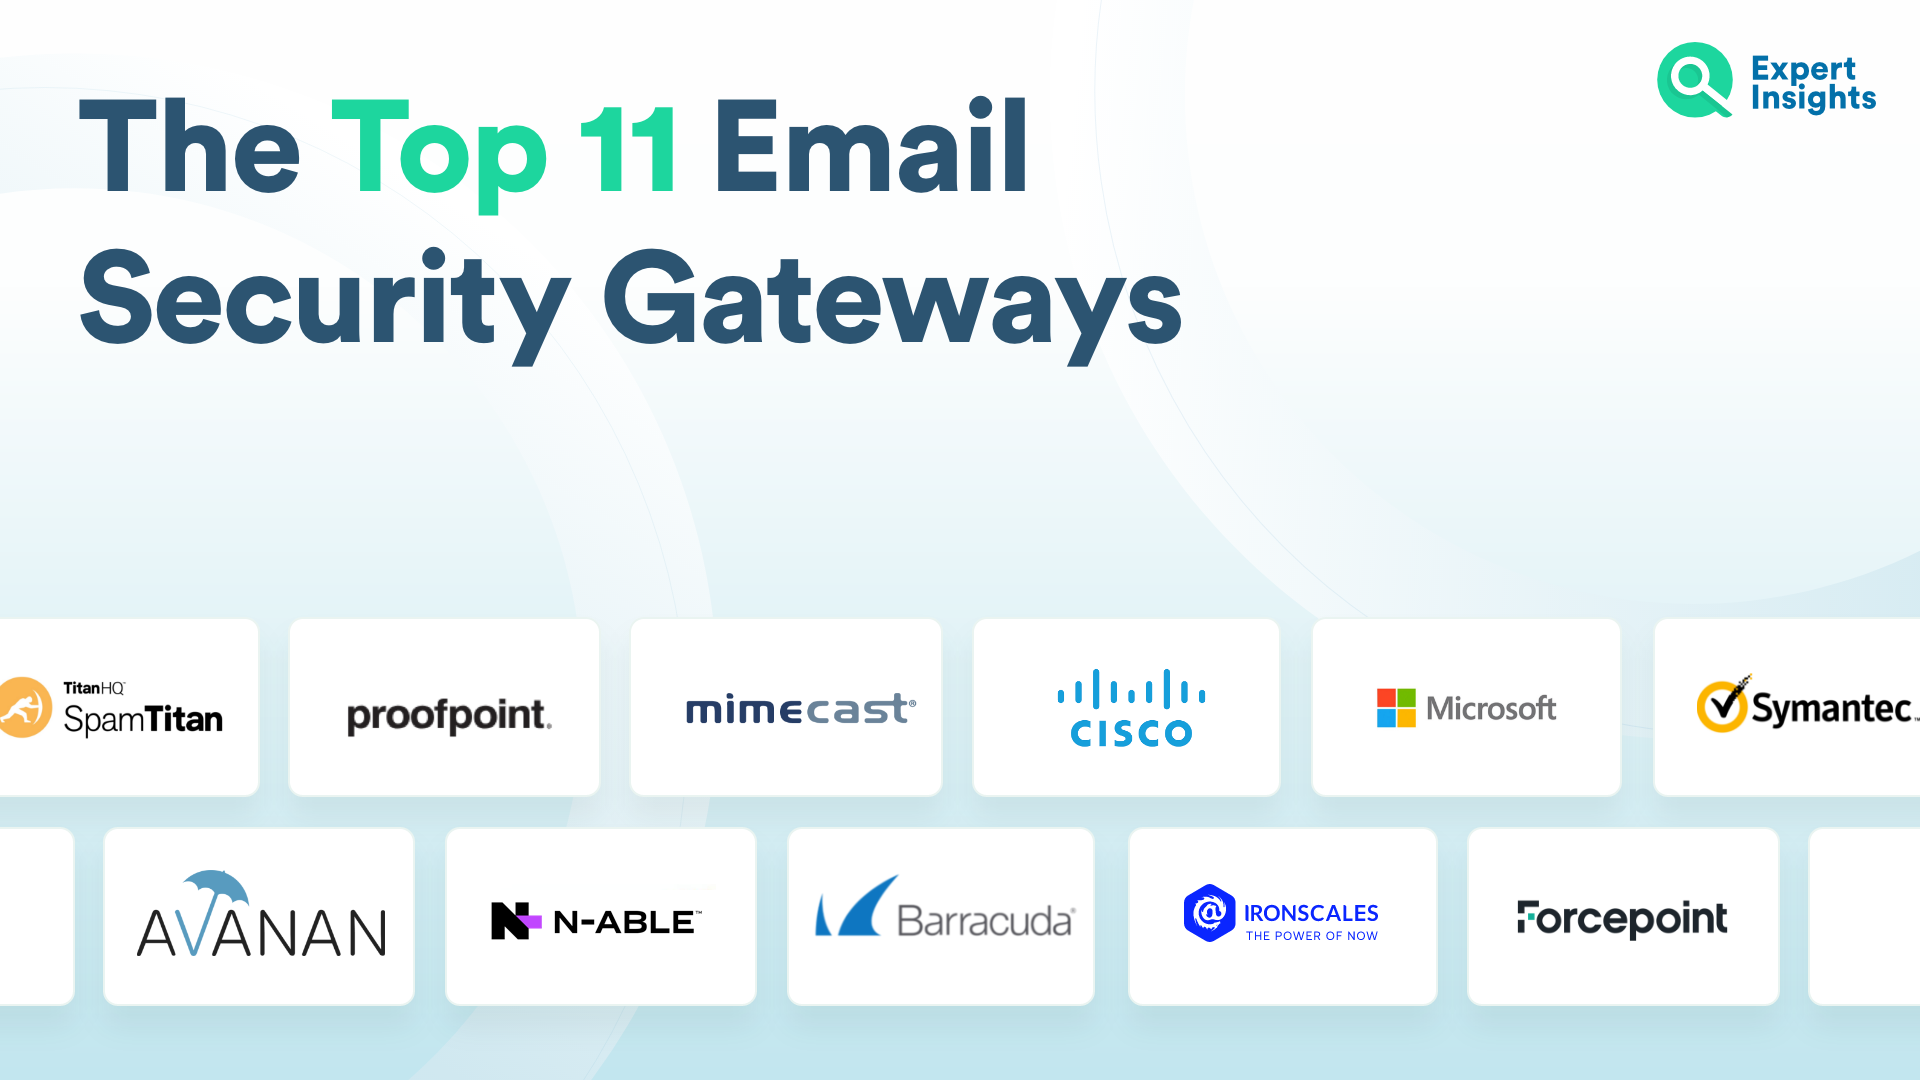 Las 11 mejores plataformas de pasarela de correo electrónico seguro: conocimientos de expertos